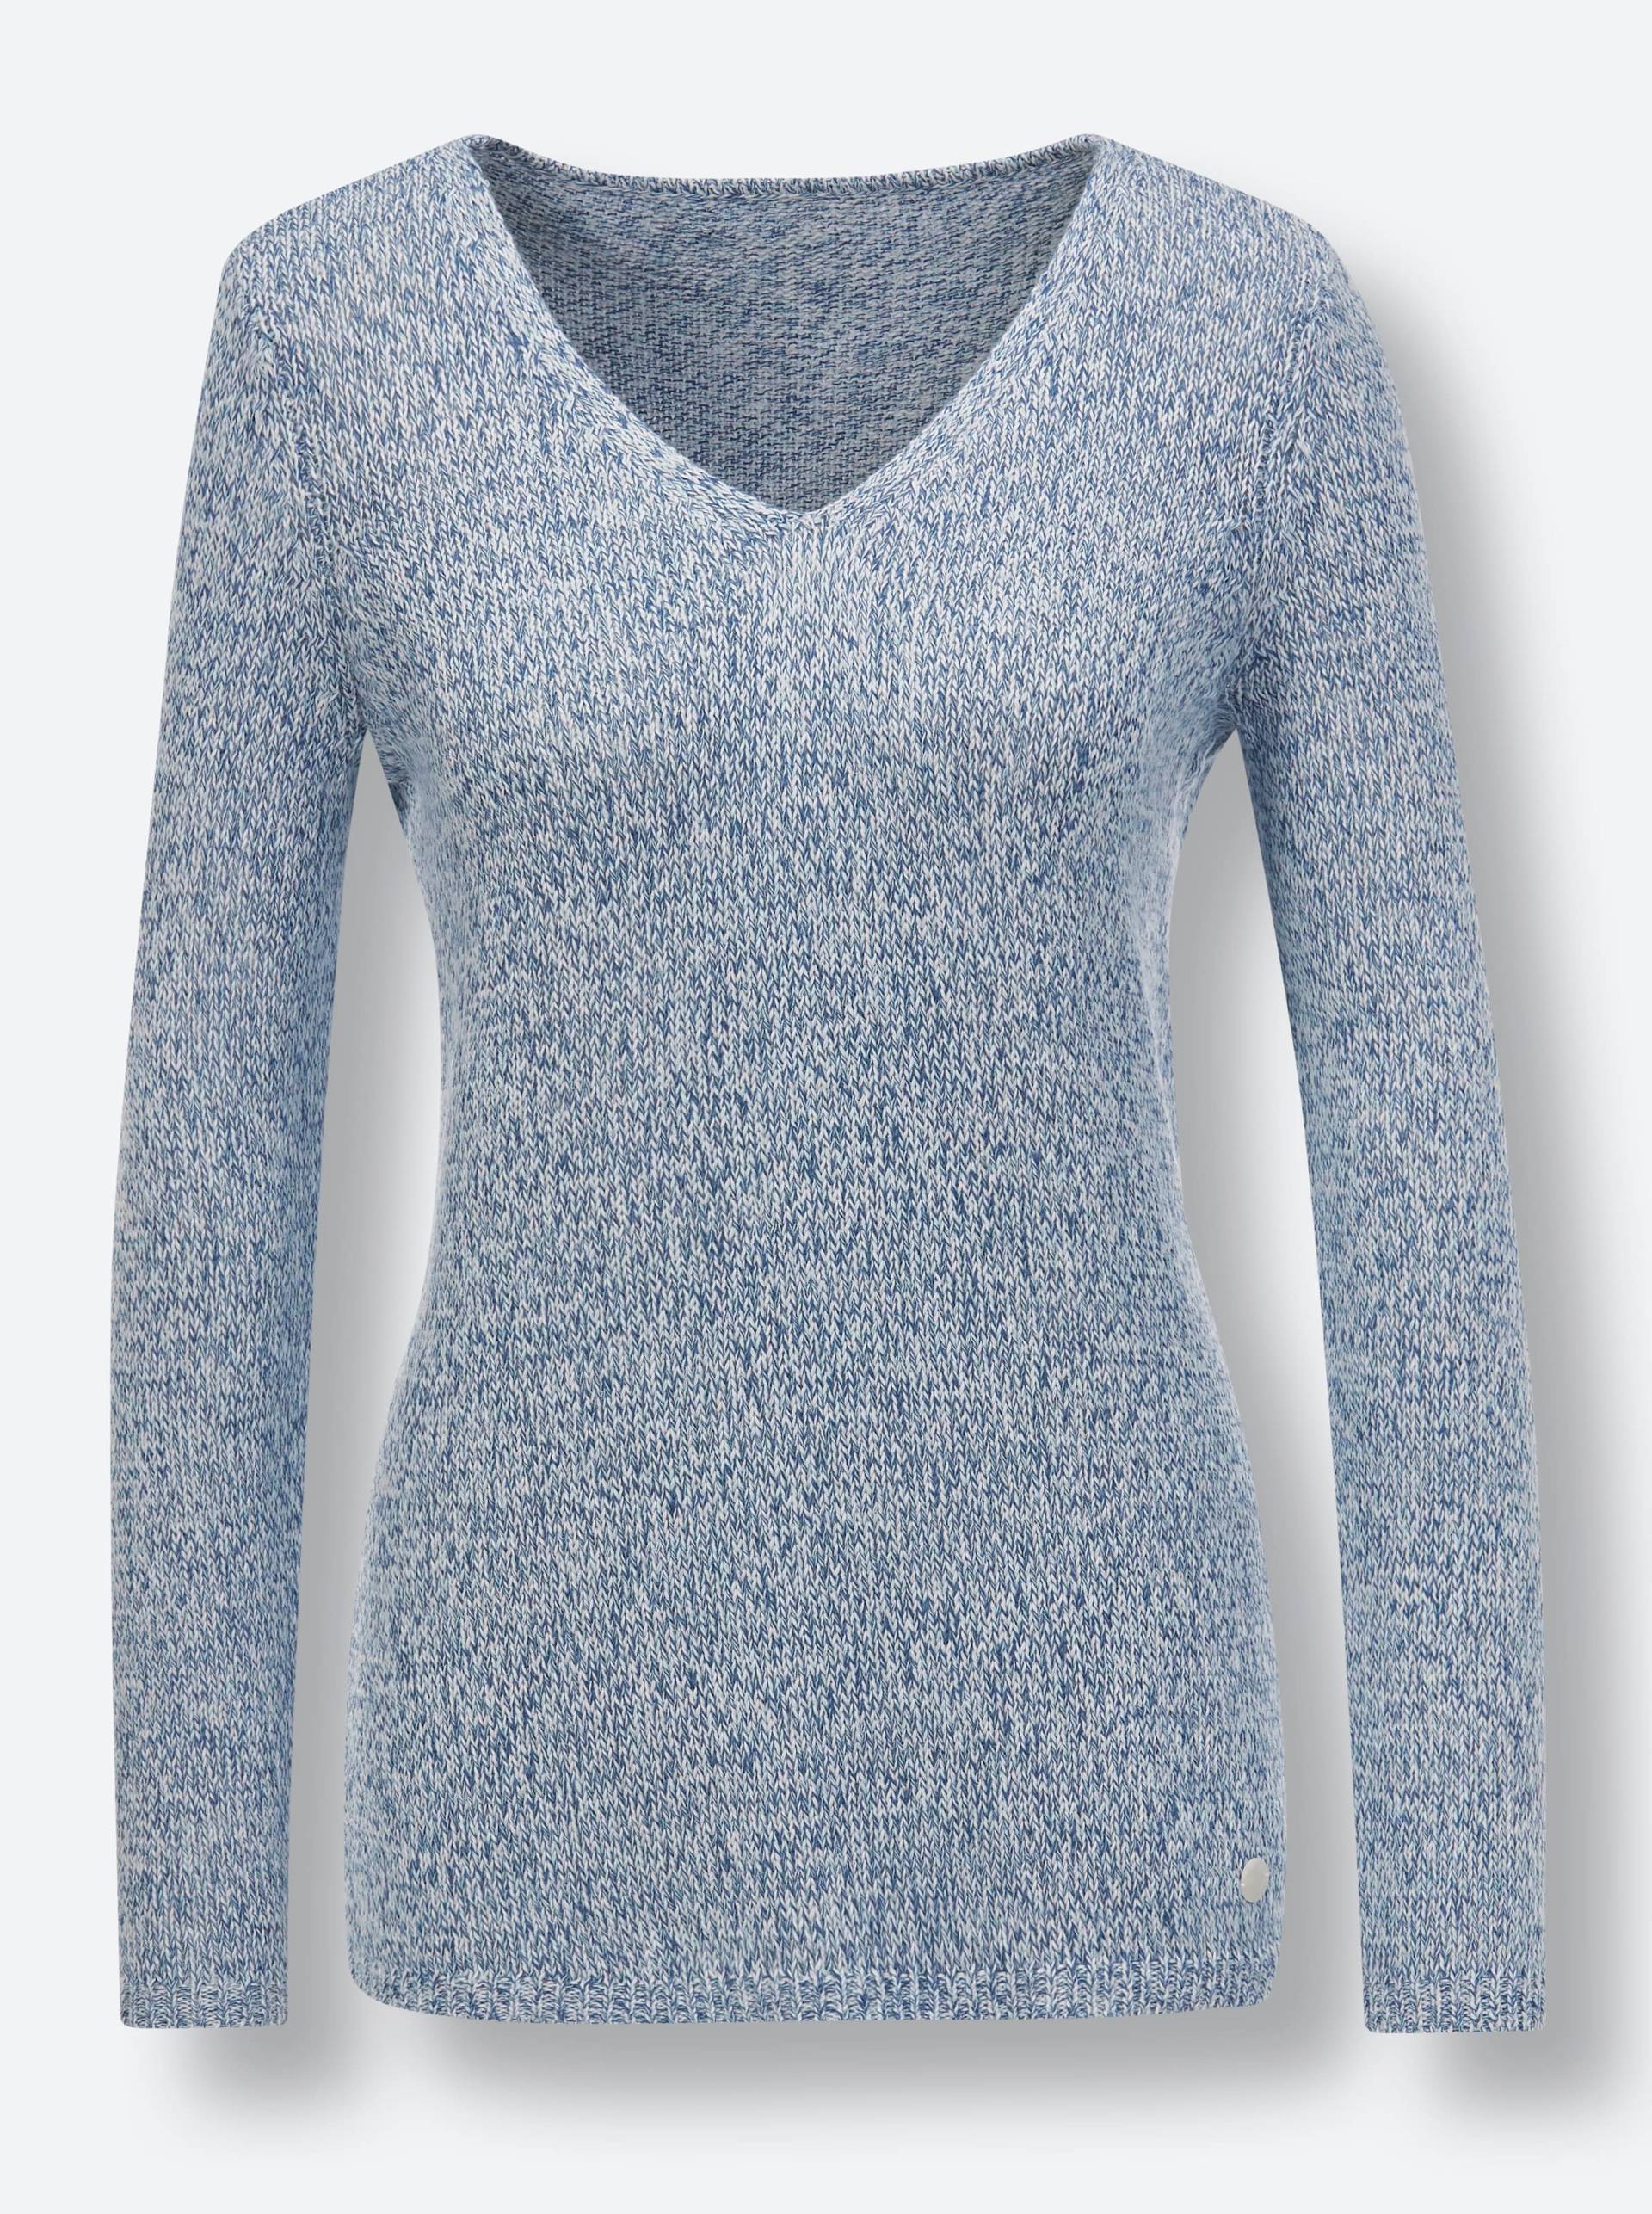 Leinen-Baumwoll-Pullover in jeansblau-mint-meliert von CREATION L PREMIUM